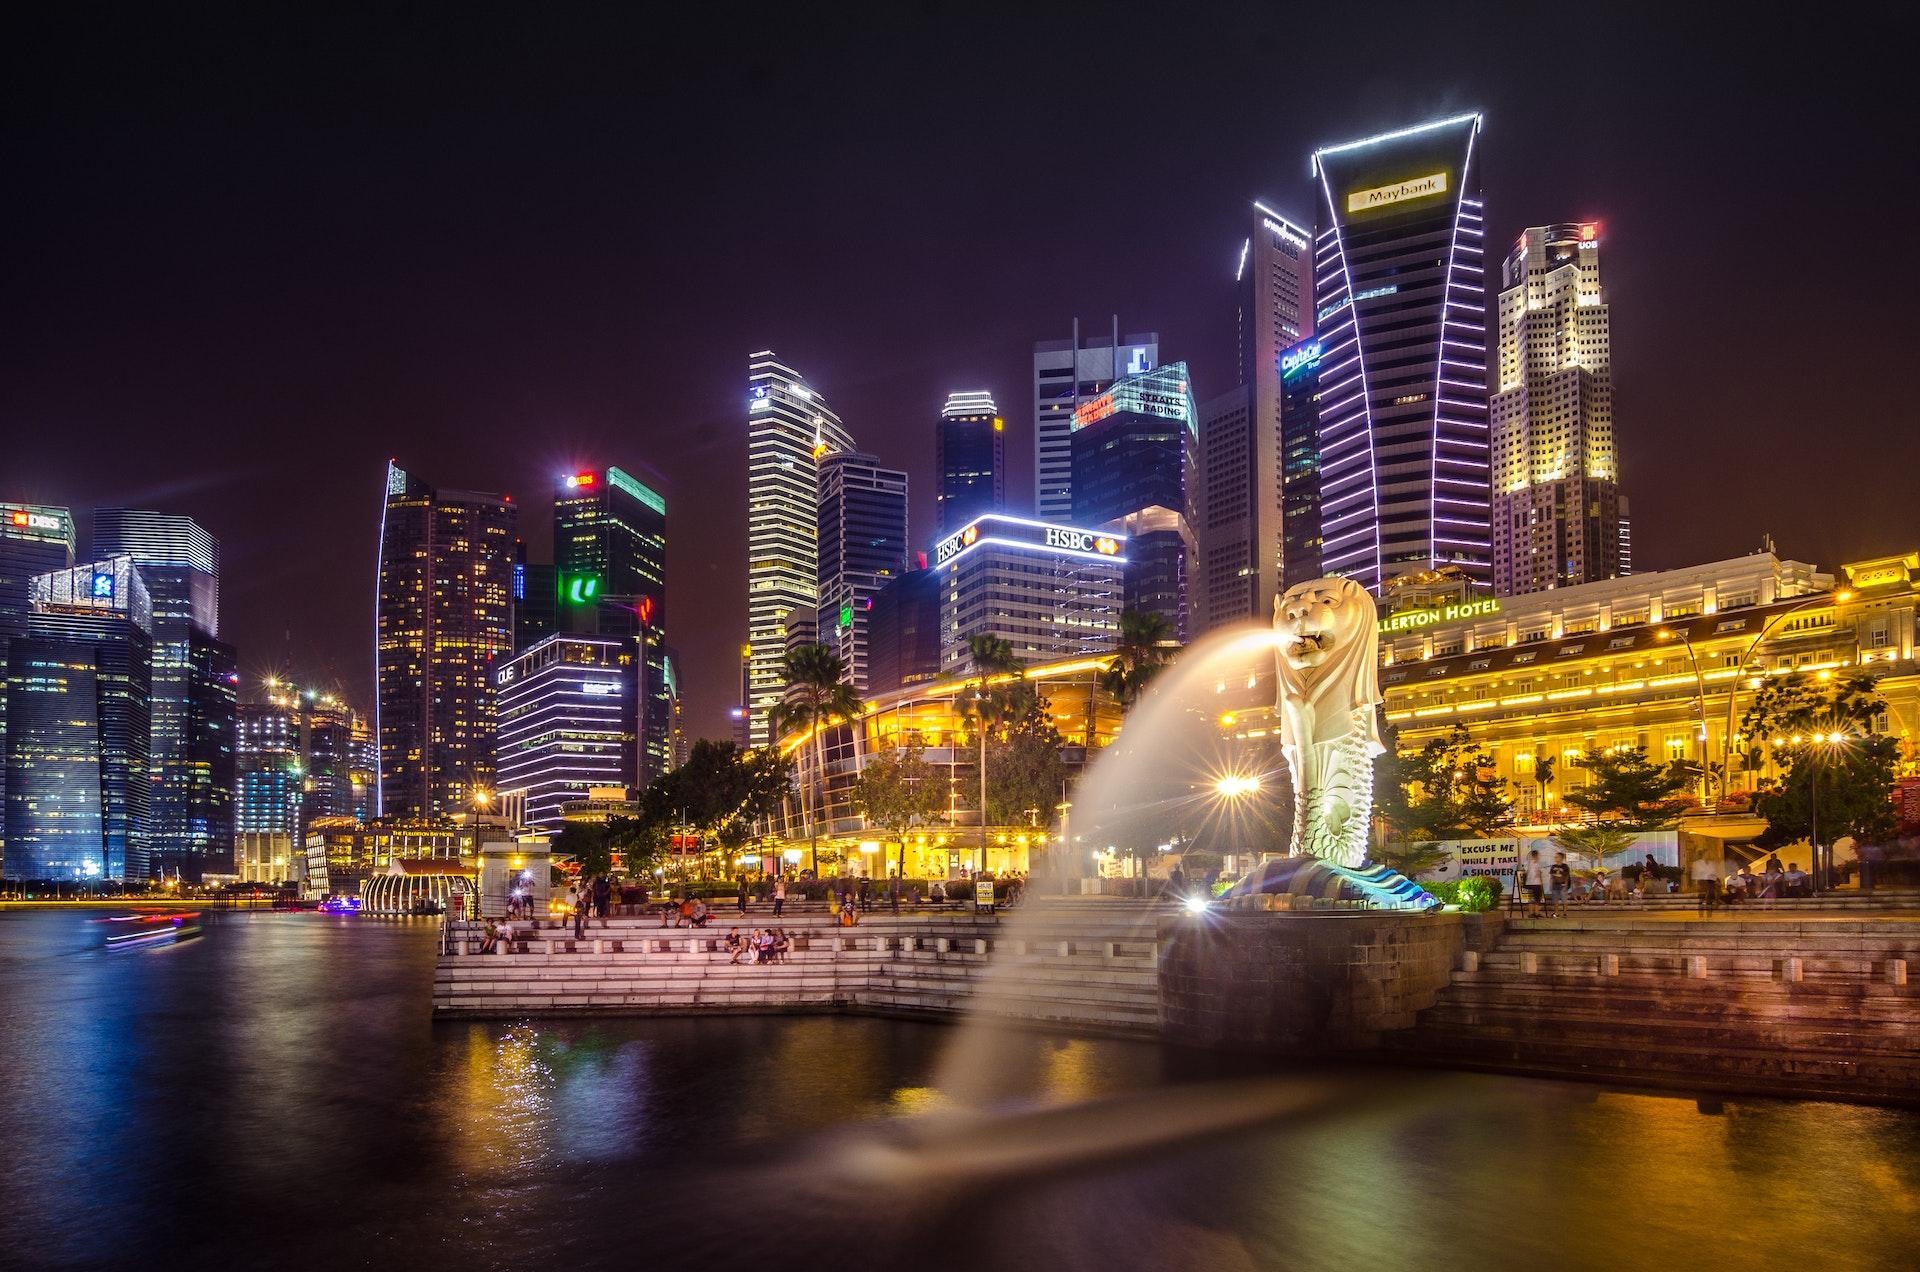 View of illuminated Singapore in the dark.